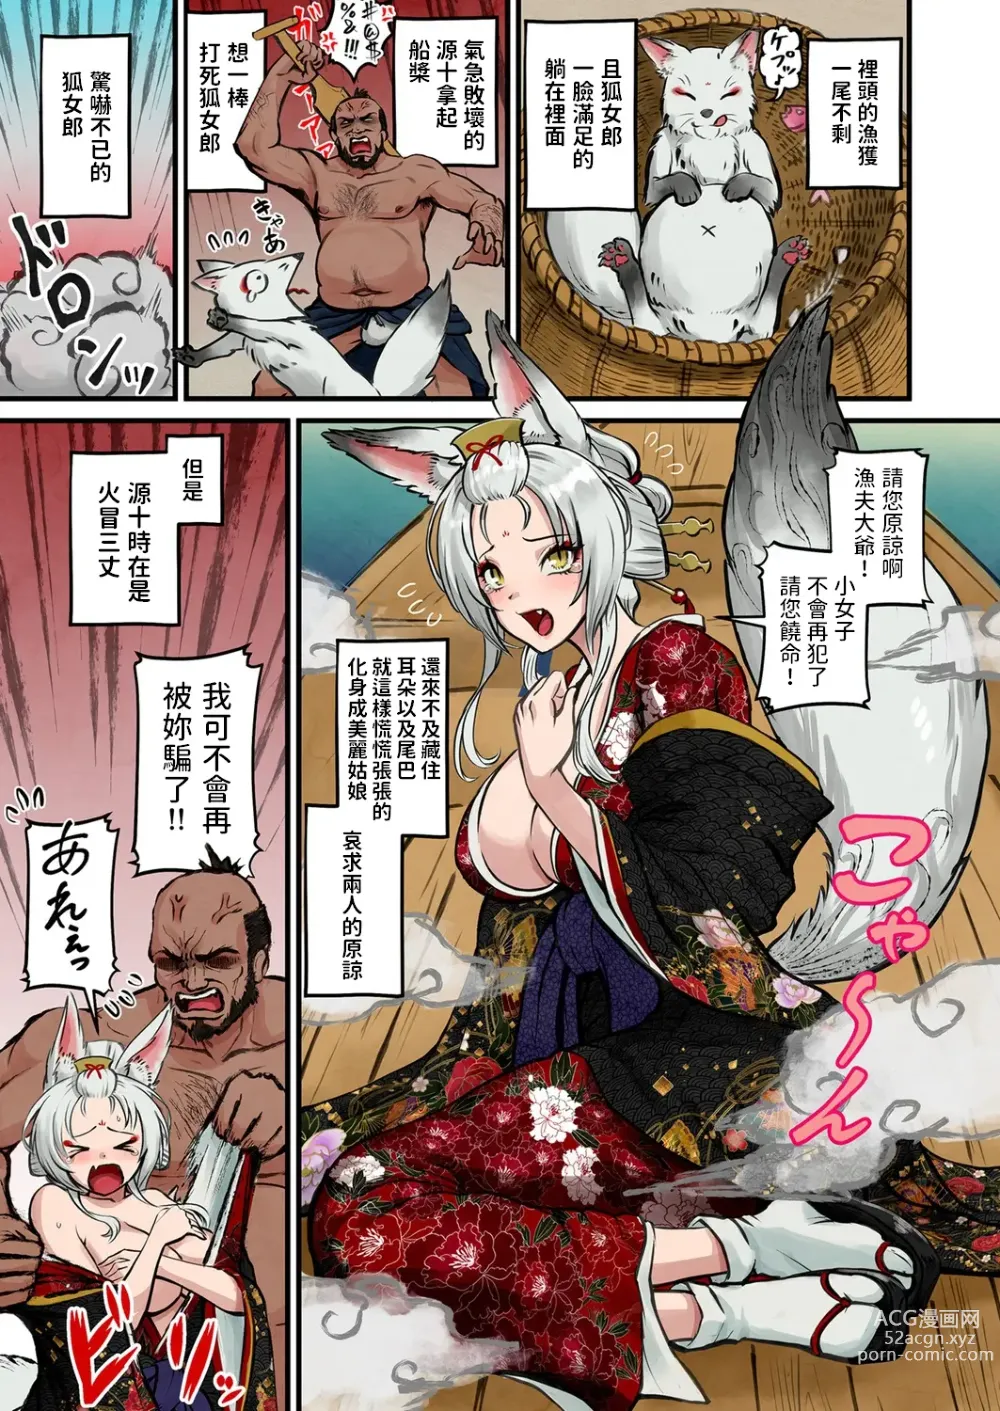 Page 6 of manga Nihon Mukashi Ero Banashi 3 “Hashidate Komerou”